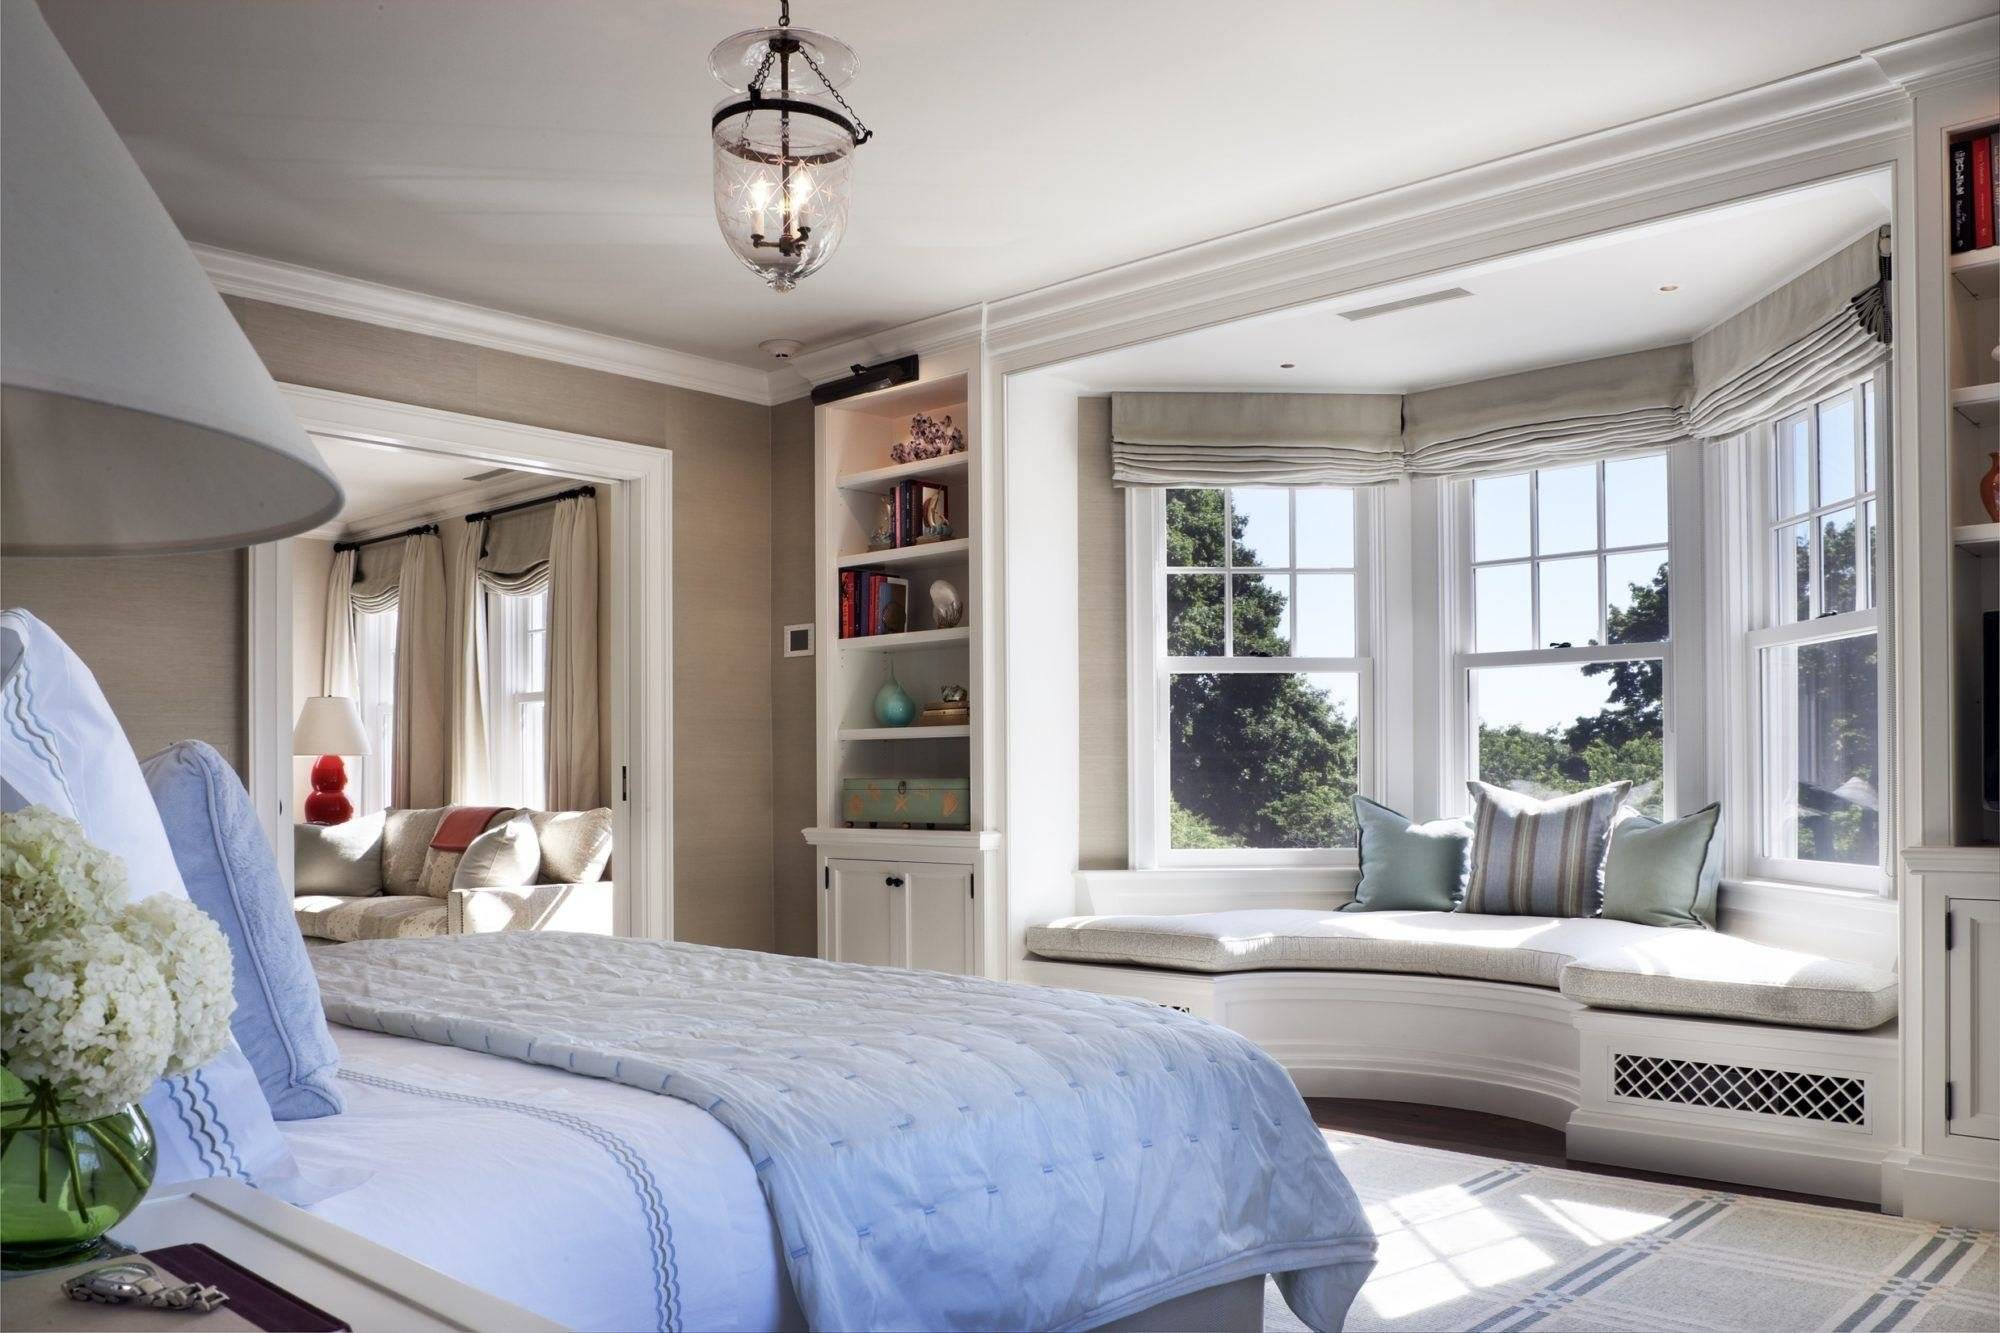 Планировка спальни: фото интерьера спальни в одноэтажном доме с большой гардеробной